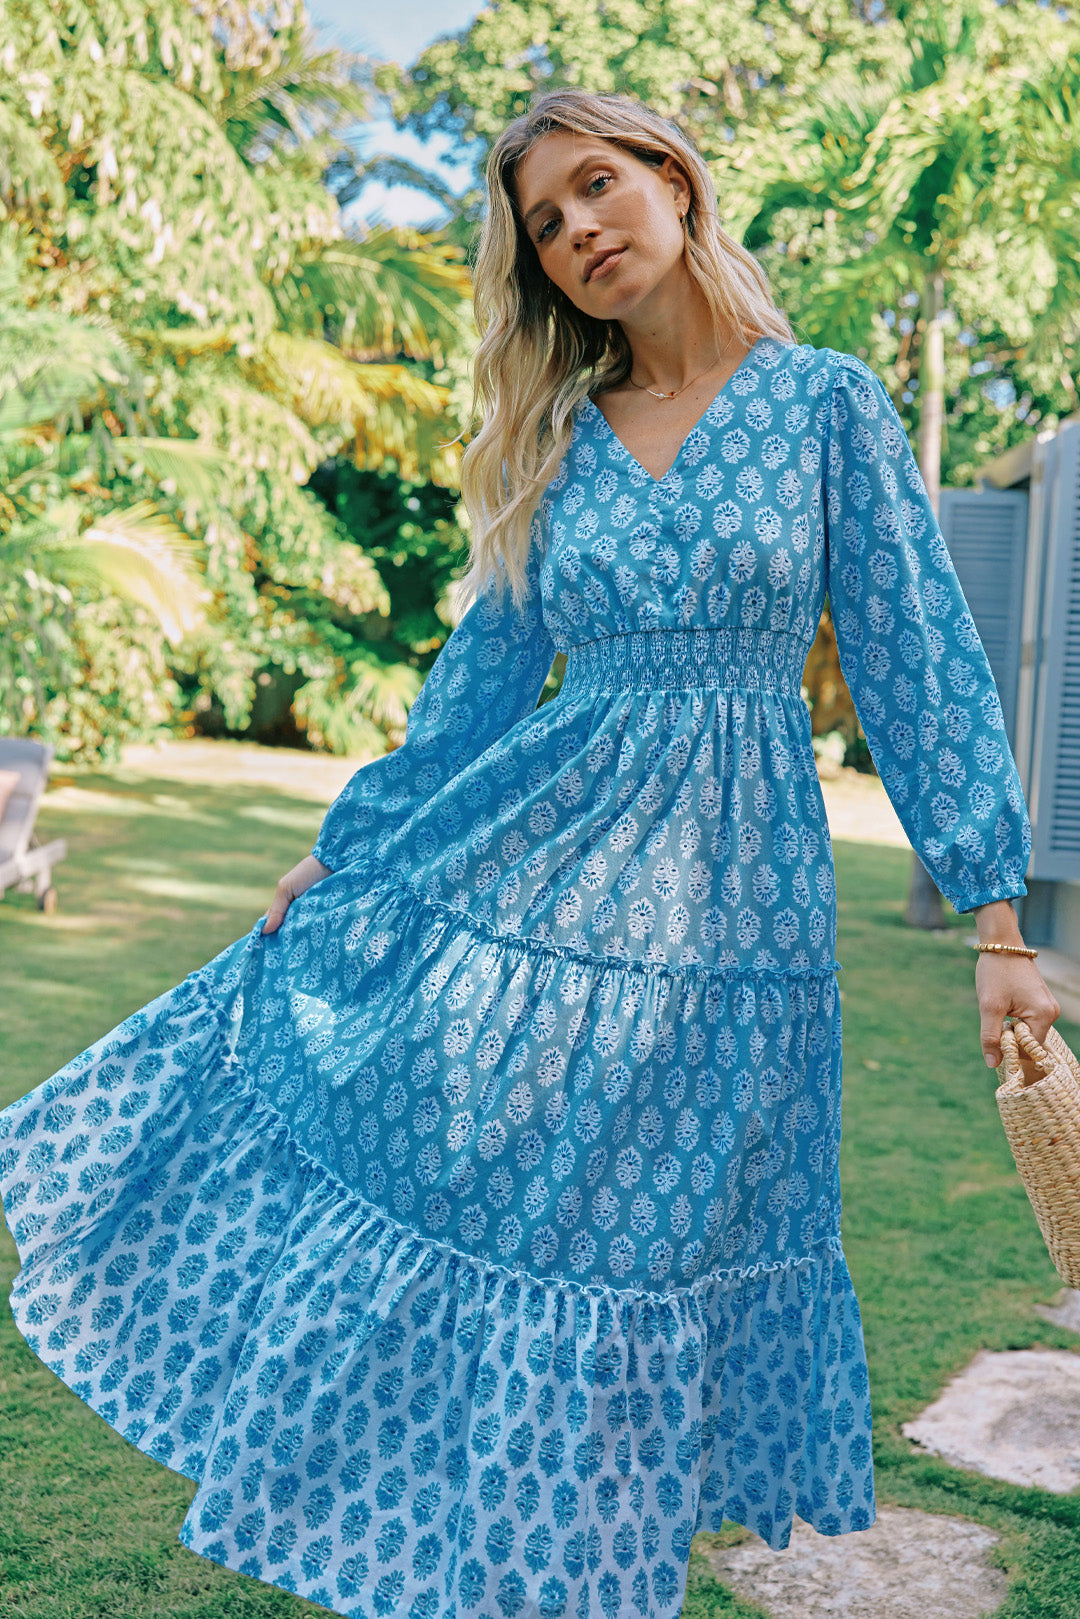 Woman in flowy, blue maxi dress in a garden.